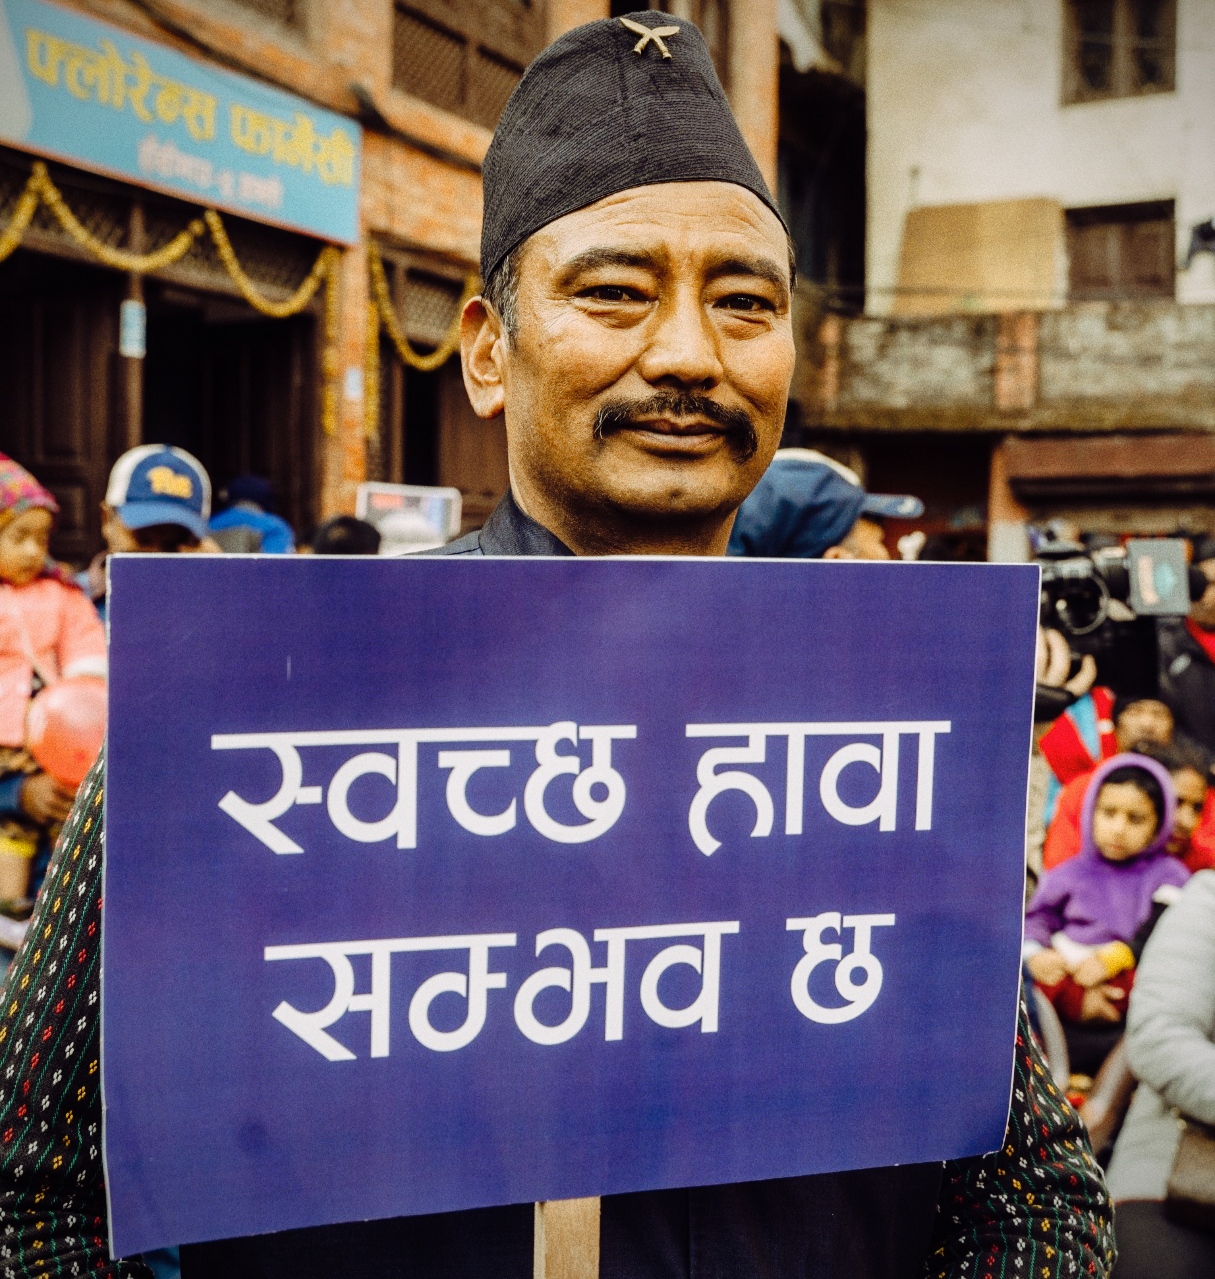 काठमाडौँ महानगरपालिका र युएसएड, स्वच्छ हावा परियोजनासँगको सहकार्य